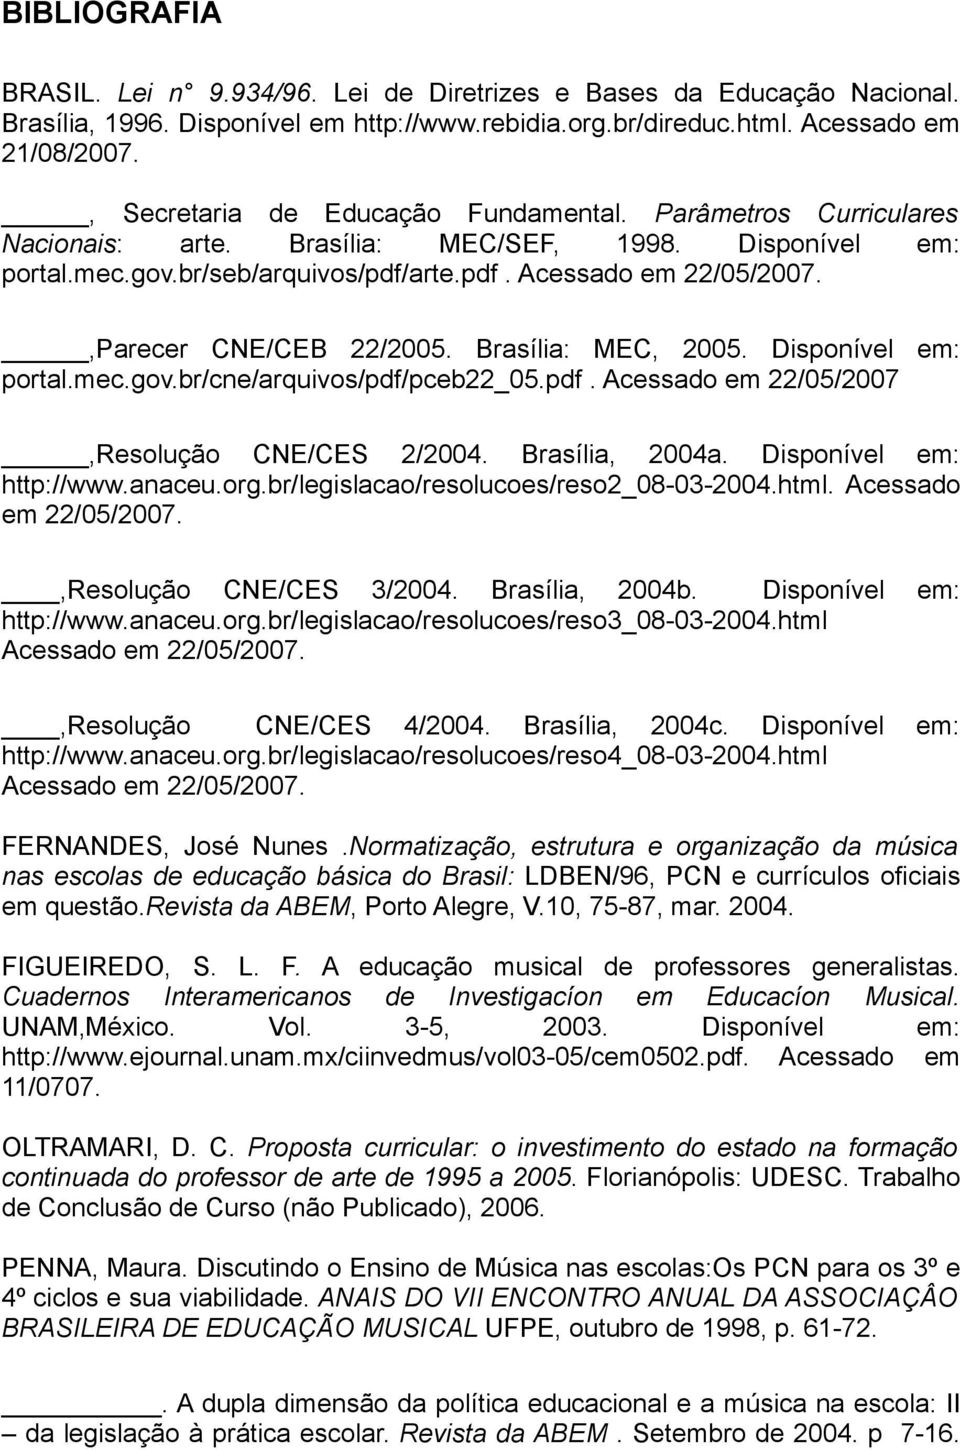 ,Parecer CNE/CEB 22/2005. Brasília: MEC, 2005. Disponível em: portal.mec.gov.br/cne/arquivos/pdf/pceb22_05.pdf. Acessado em 22/05/2007,Resolução CNE/CES 2/2004. Brasília, 2004a.